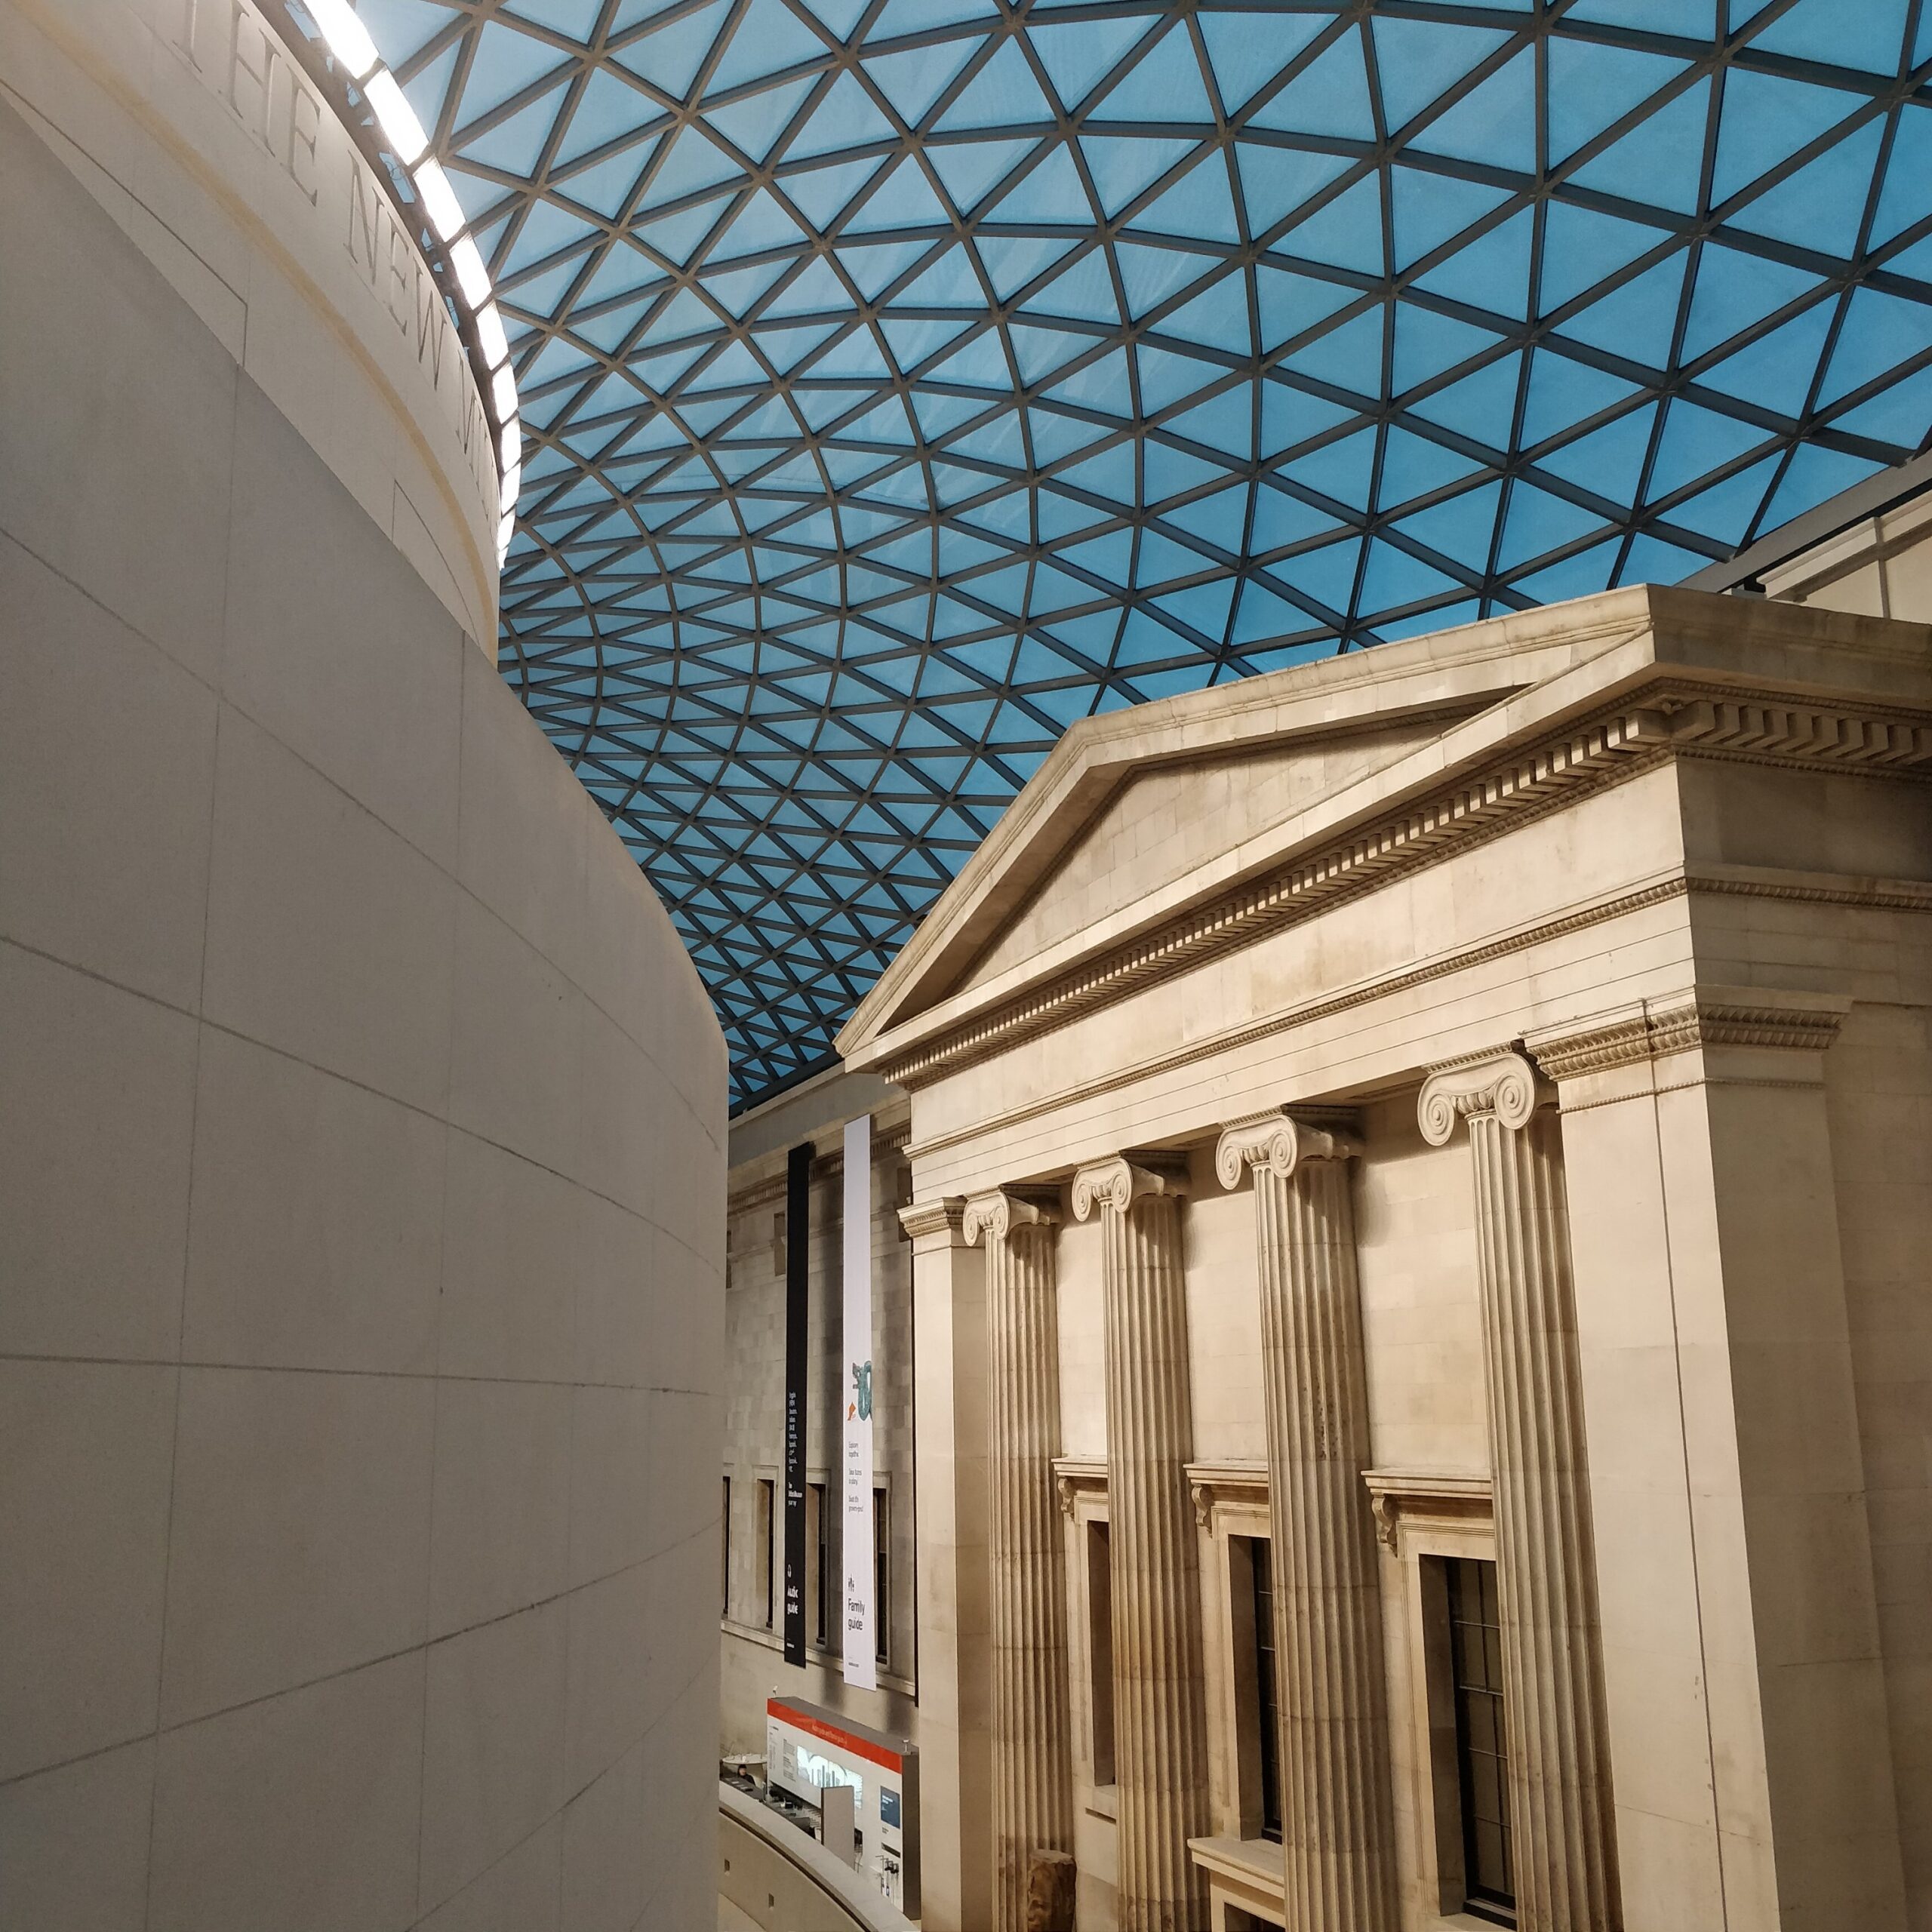 British Museum, the ceiling